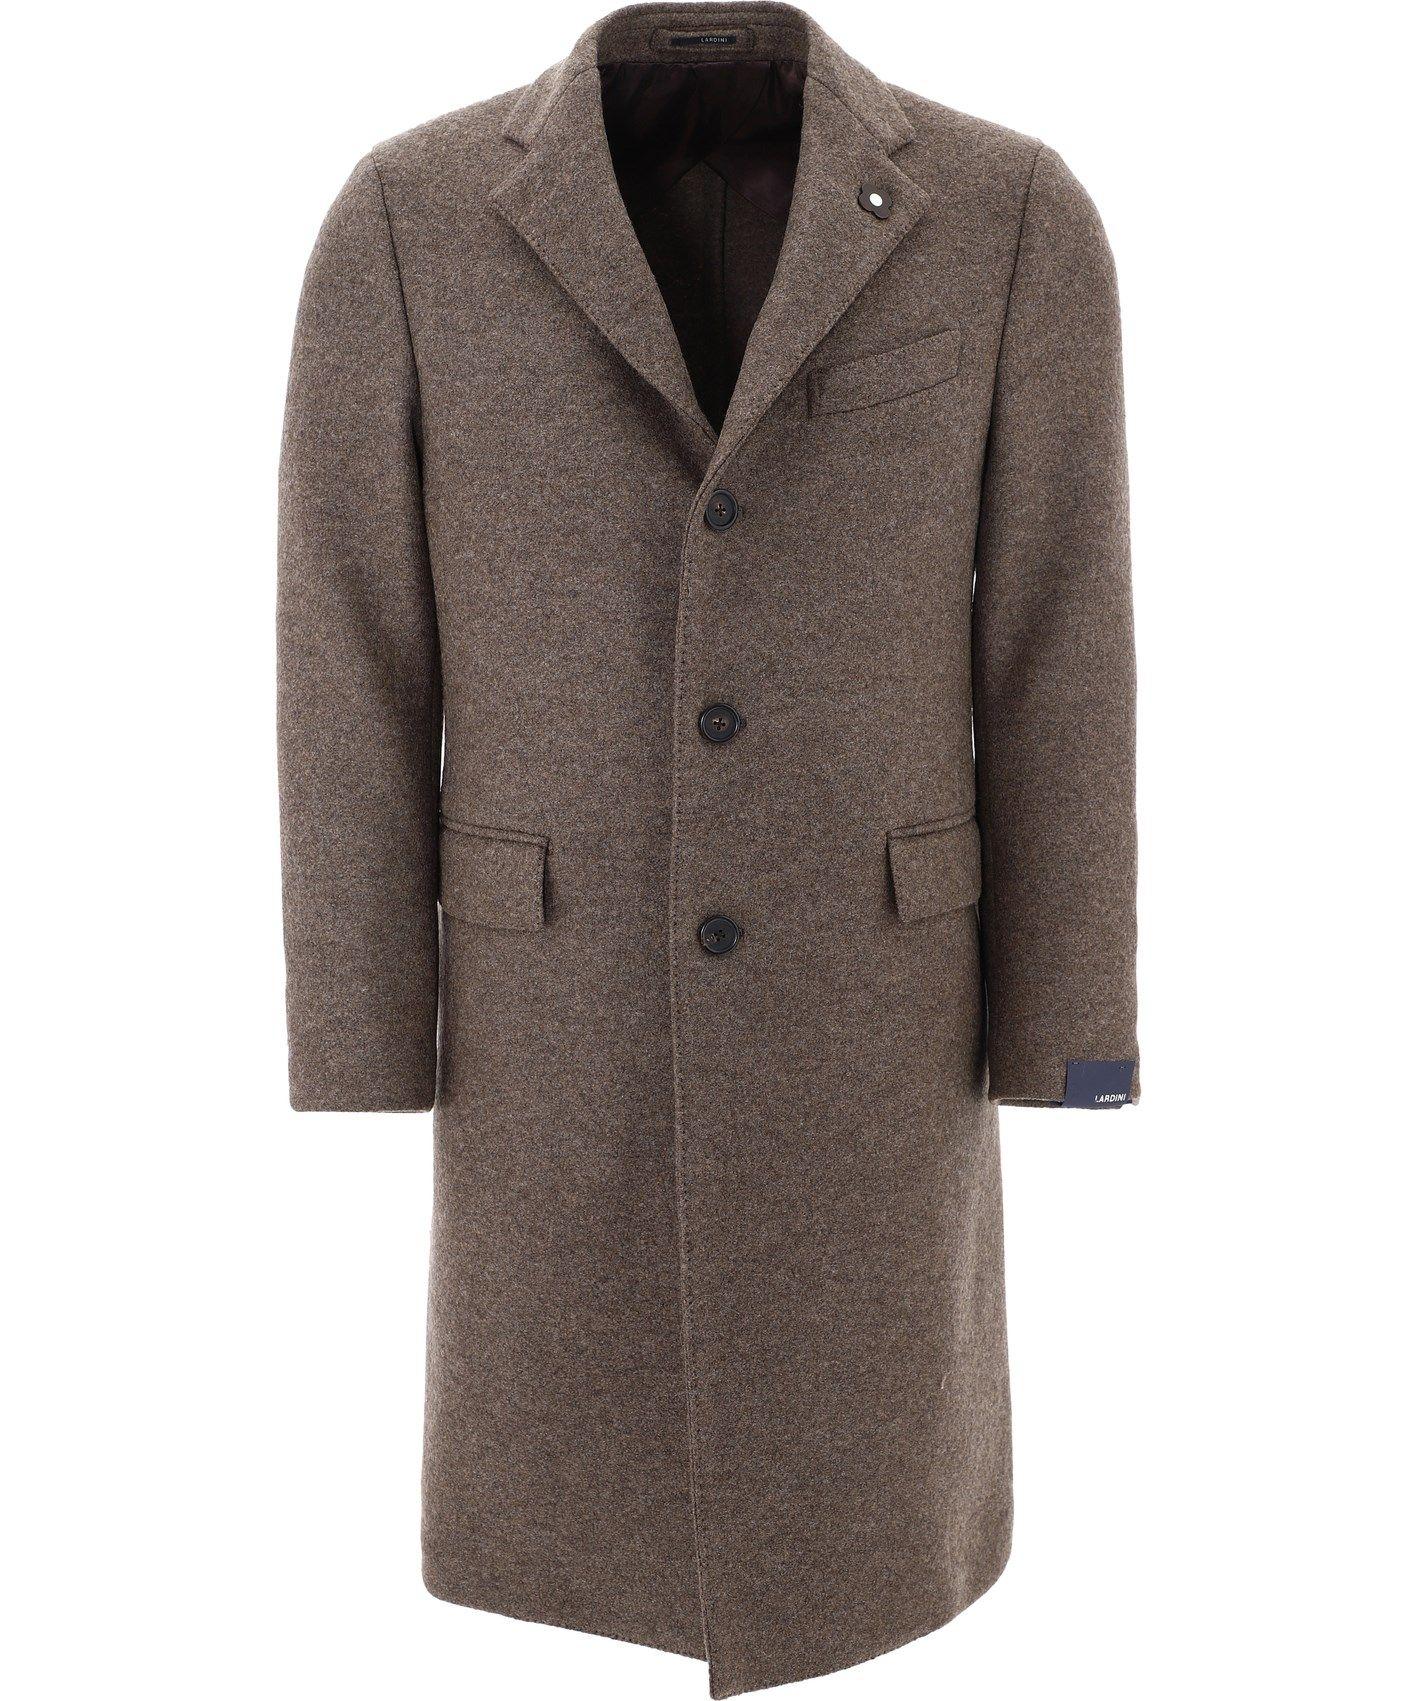 Lardini Wool Coat in Brown for Men - Lyst